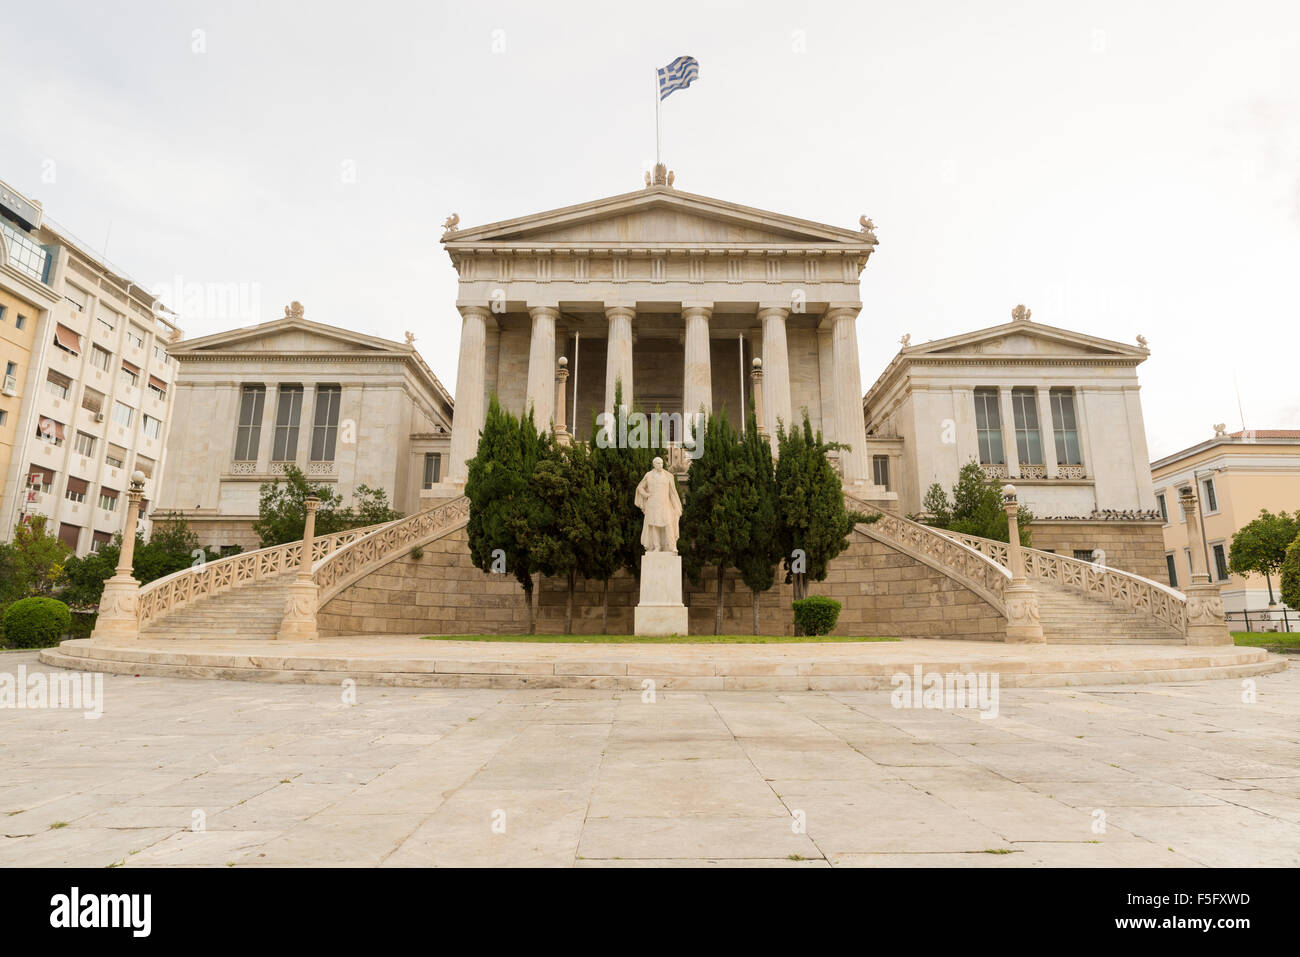 La Bibliothèque Nationale de Grèce.Le bâtiment de marbre néoclassique est situé dans le centre d'Athènes. Construit en 1887-1902. Banque D'Images